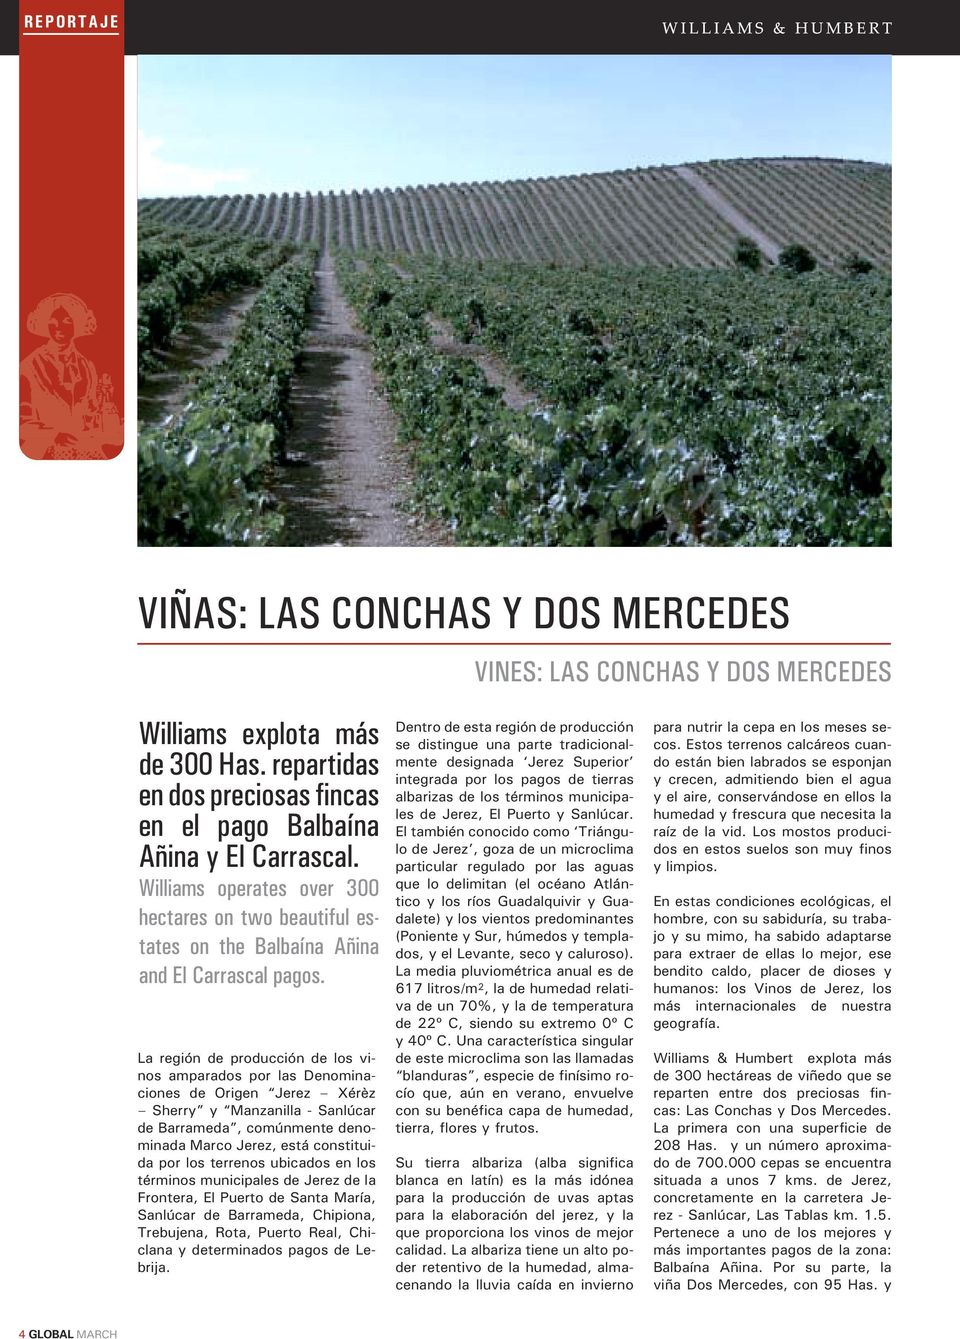 La región de producción de los vinos amparados por las Denominaciones de Origen Jerez Xérèz Sherry y Manzanilla - Sanlúcar de Barrameda, comúnmente denominada Marco Jerez, está constituida por los